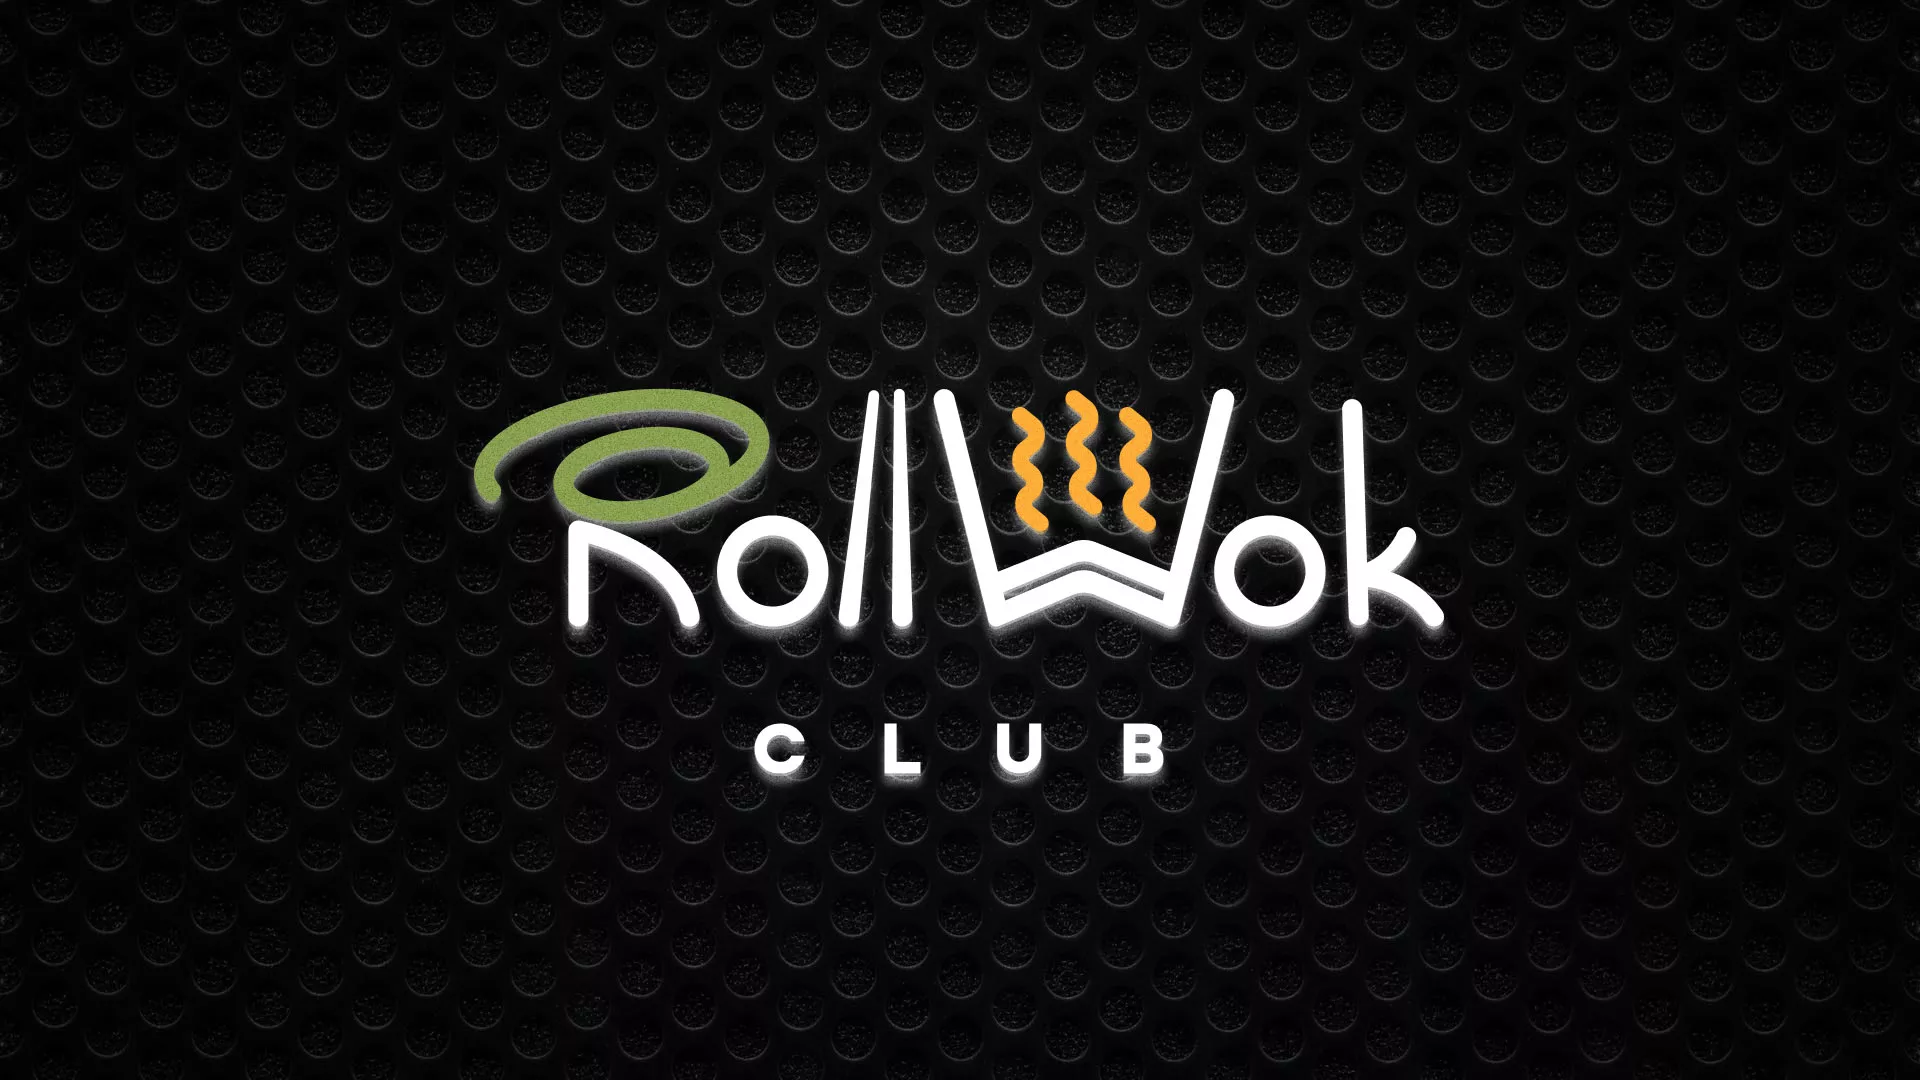 Брендирование торговых точек суши-бара «Roll Wok Club» в Топках